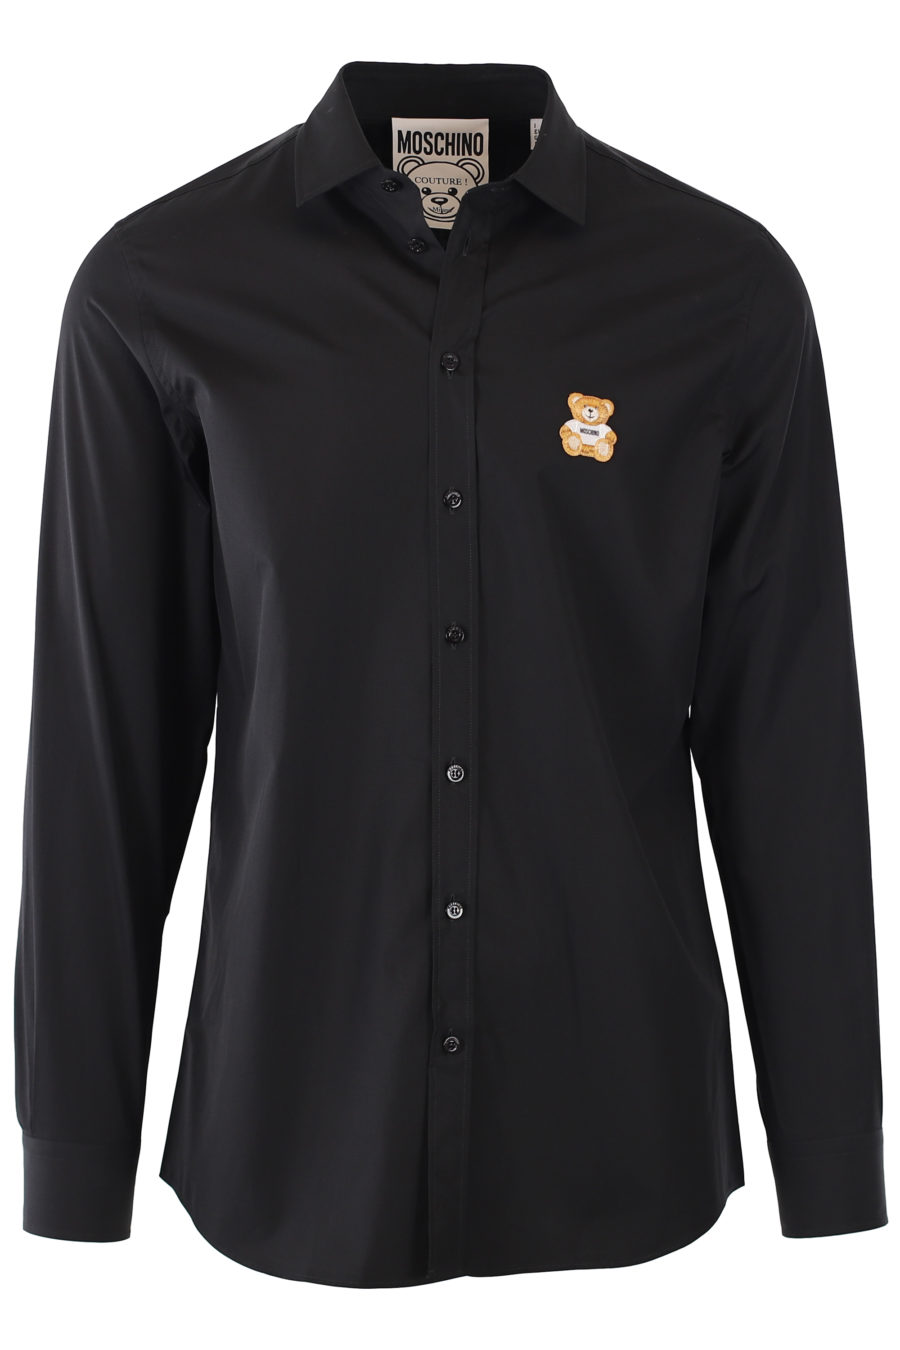 Camisa negra con logo oso - IMG 9309